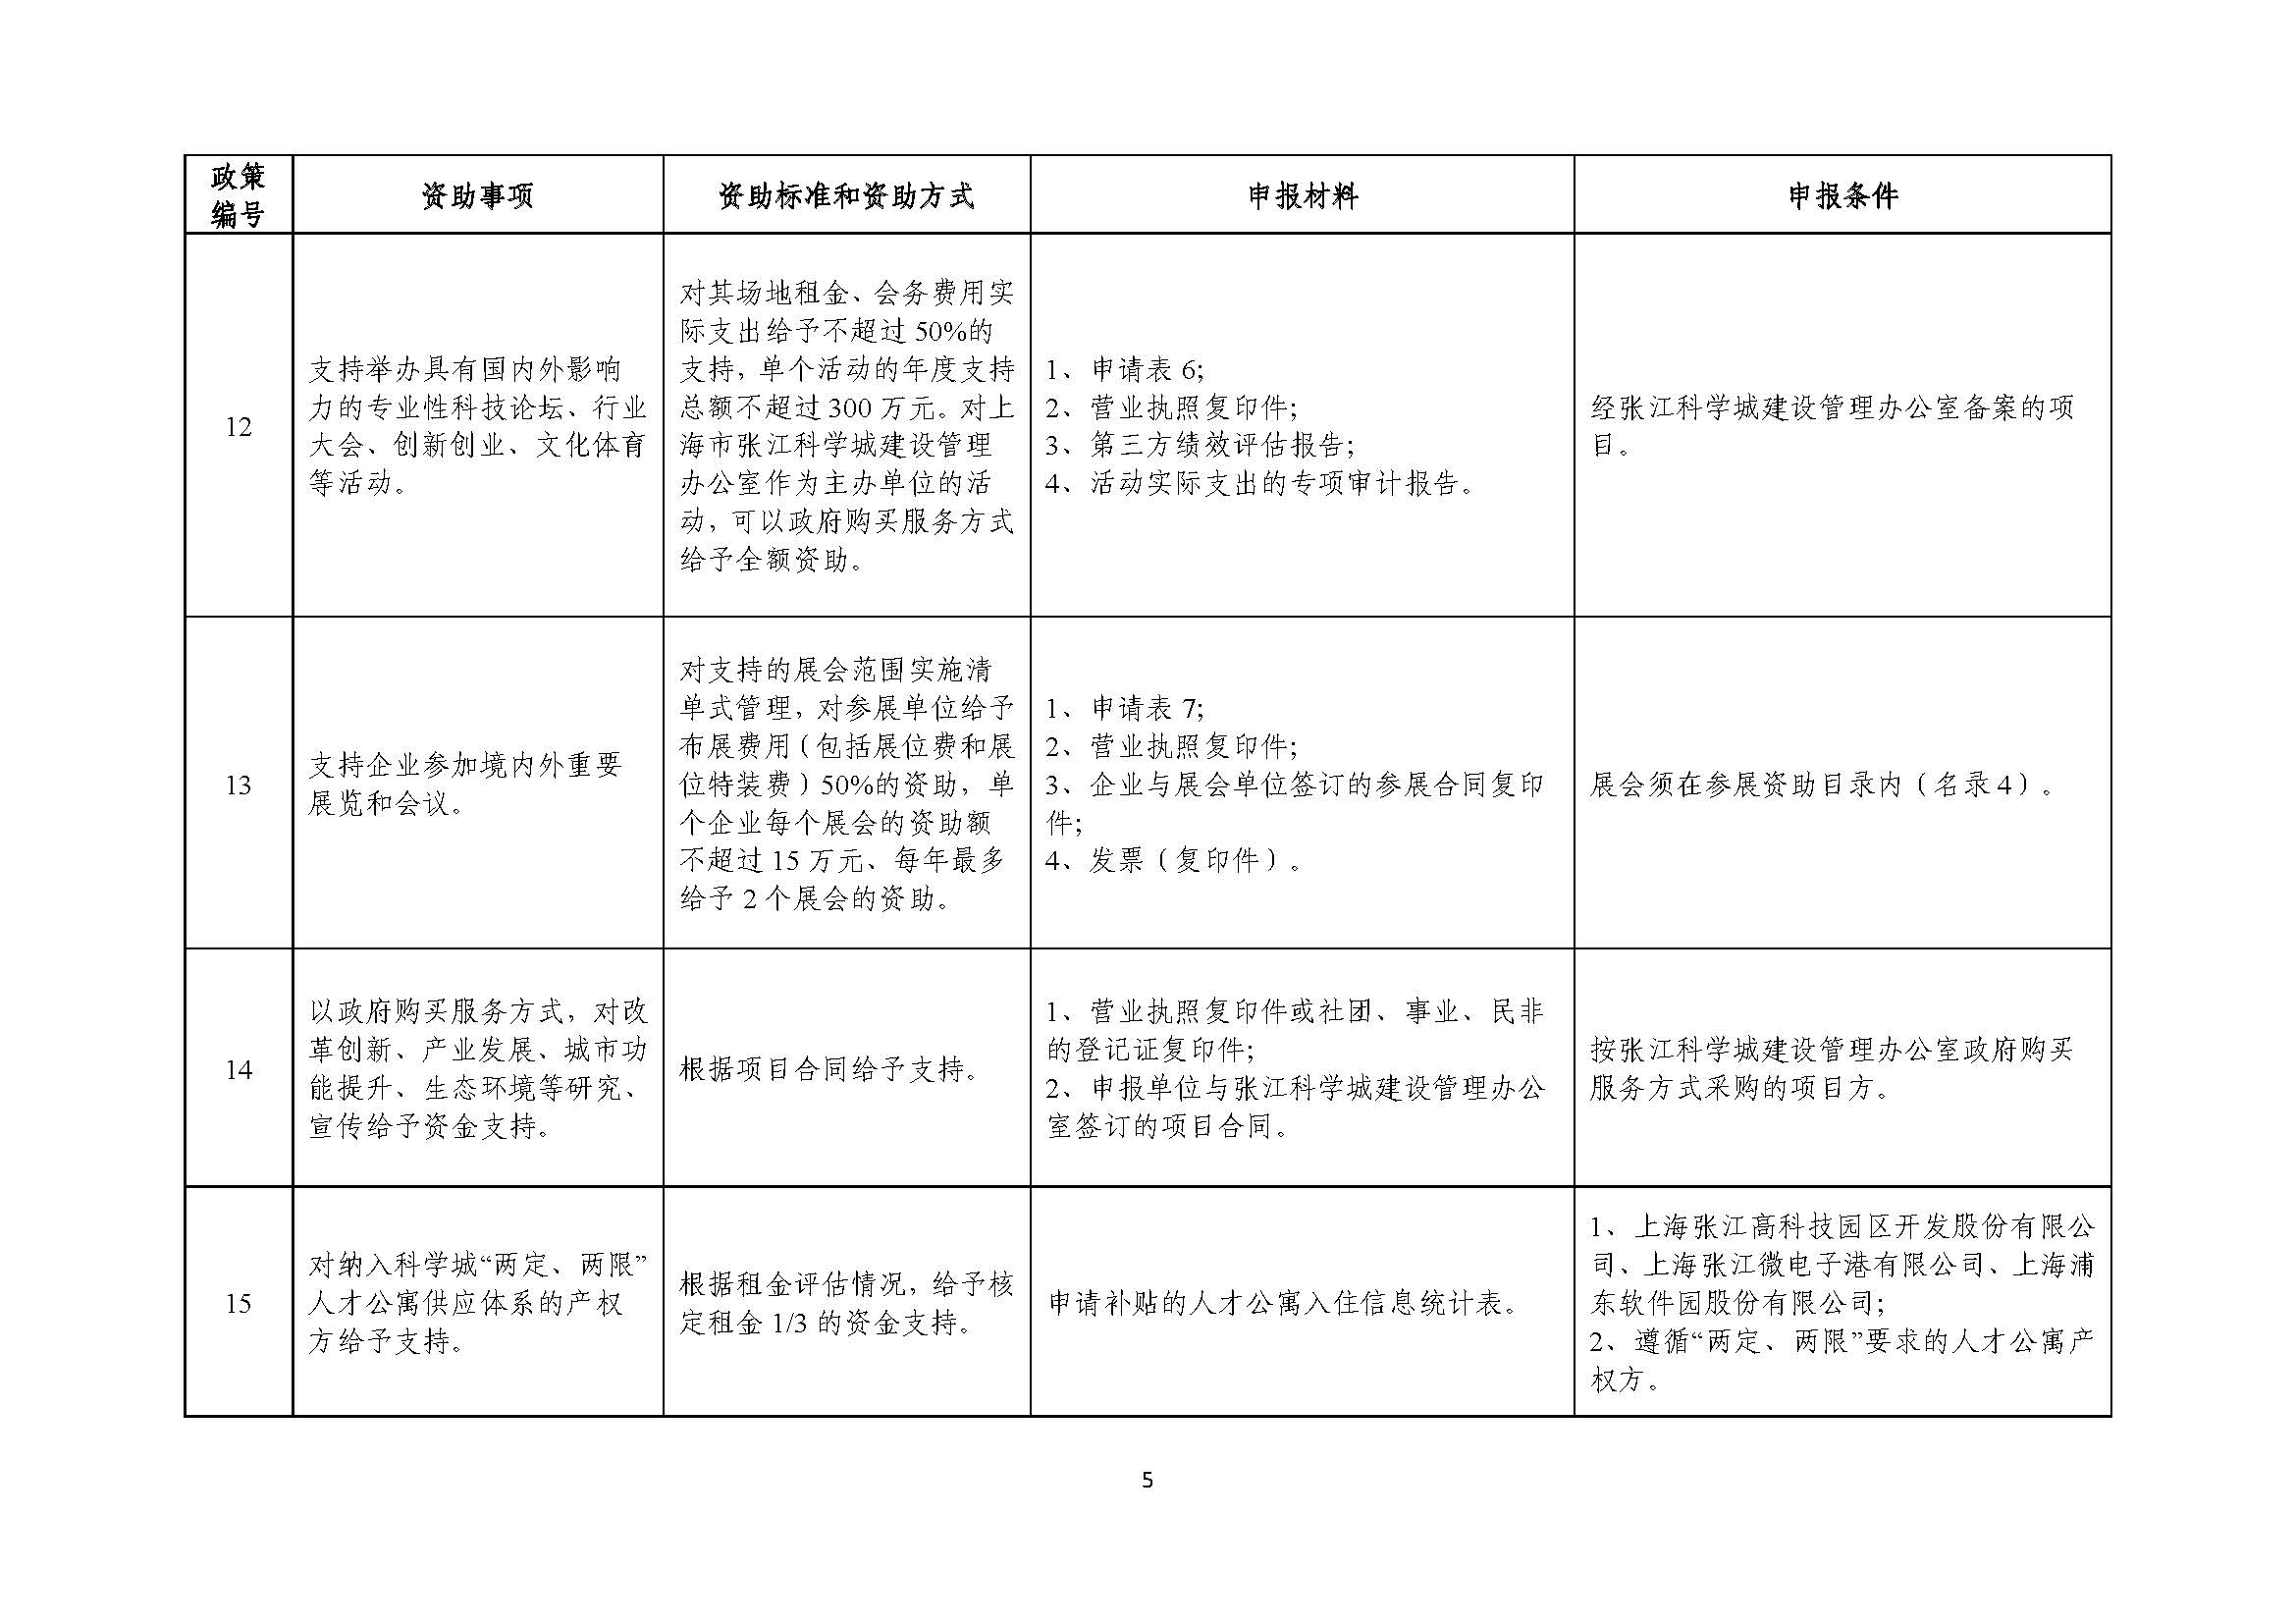 2021年张江科学城专项政策申报指南_页面_05.jpg